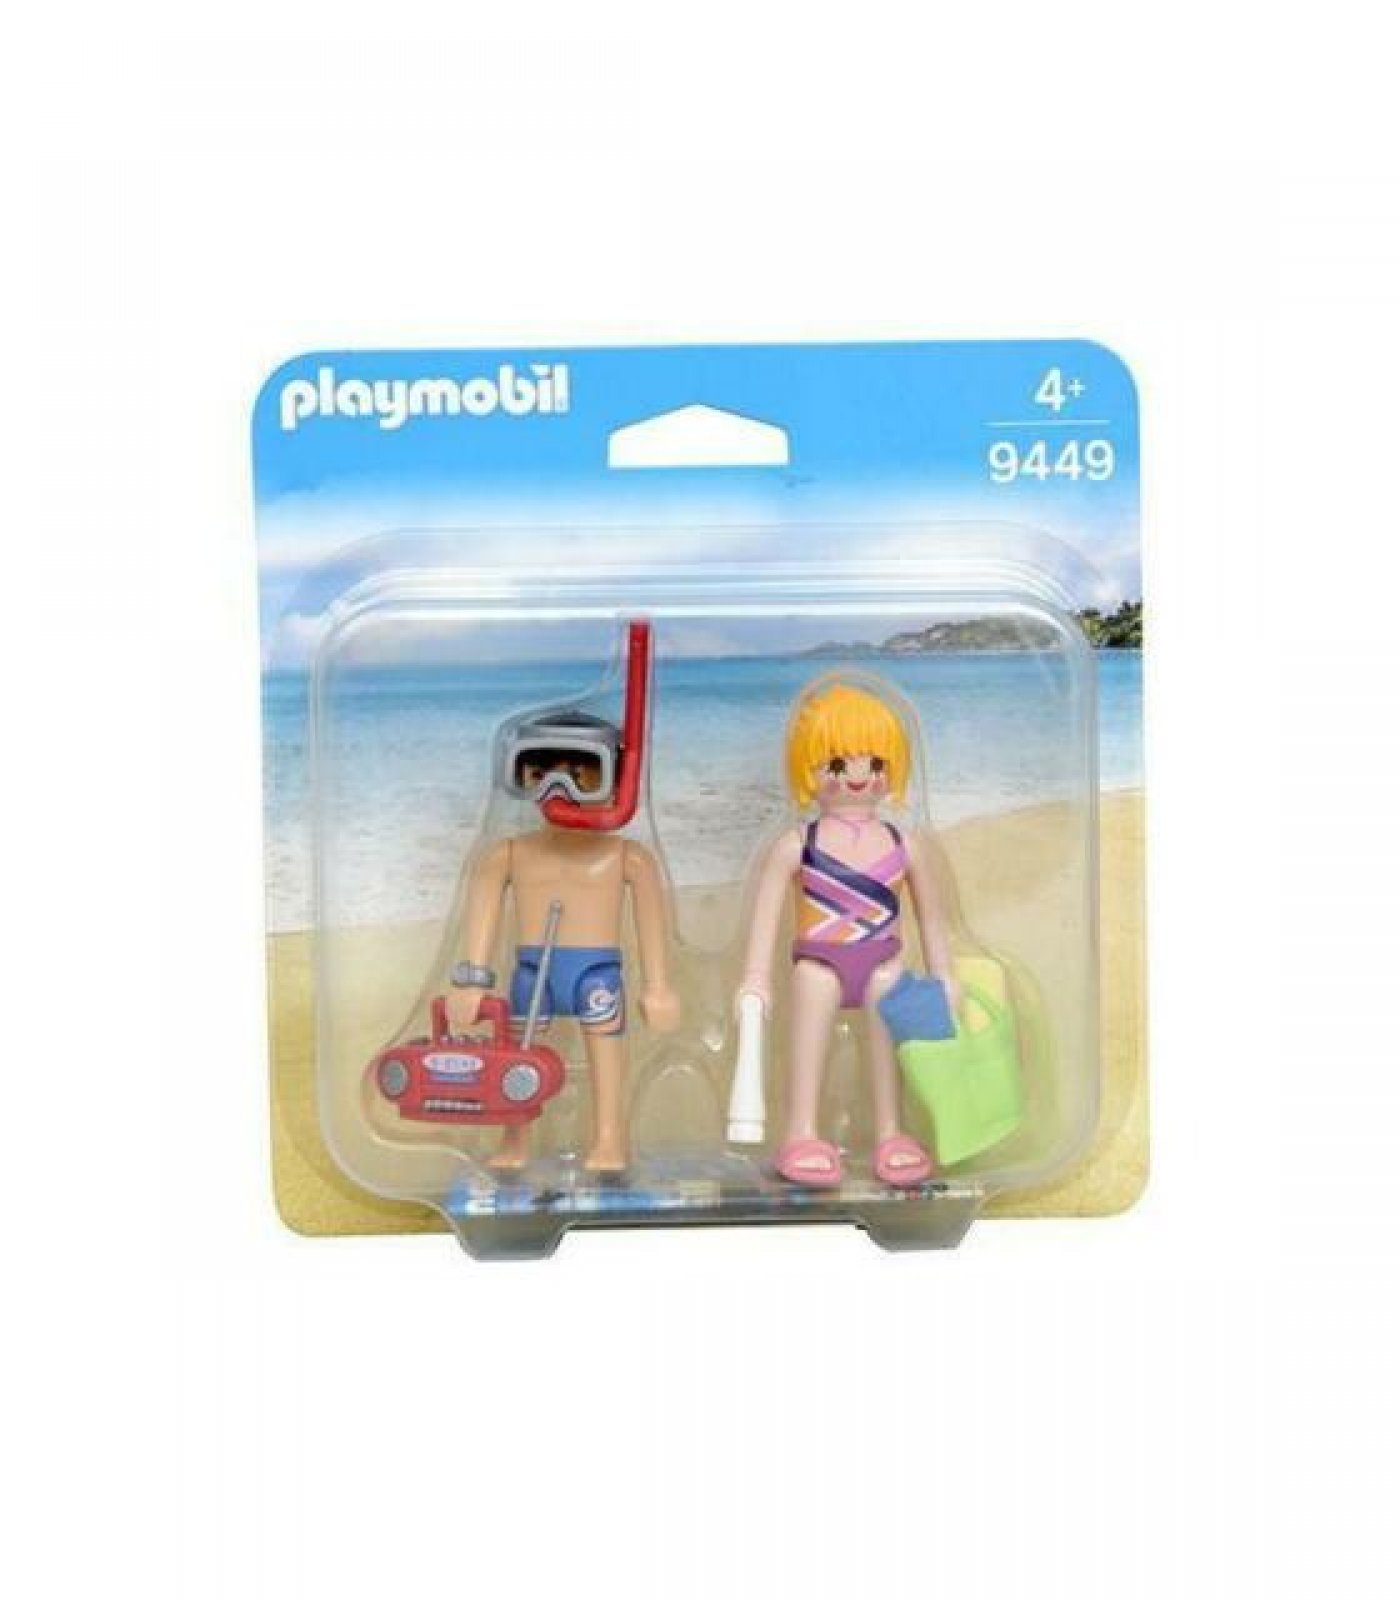 Playmobil Duo Pack 9449 Pareja En La Playa